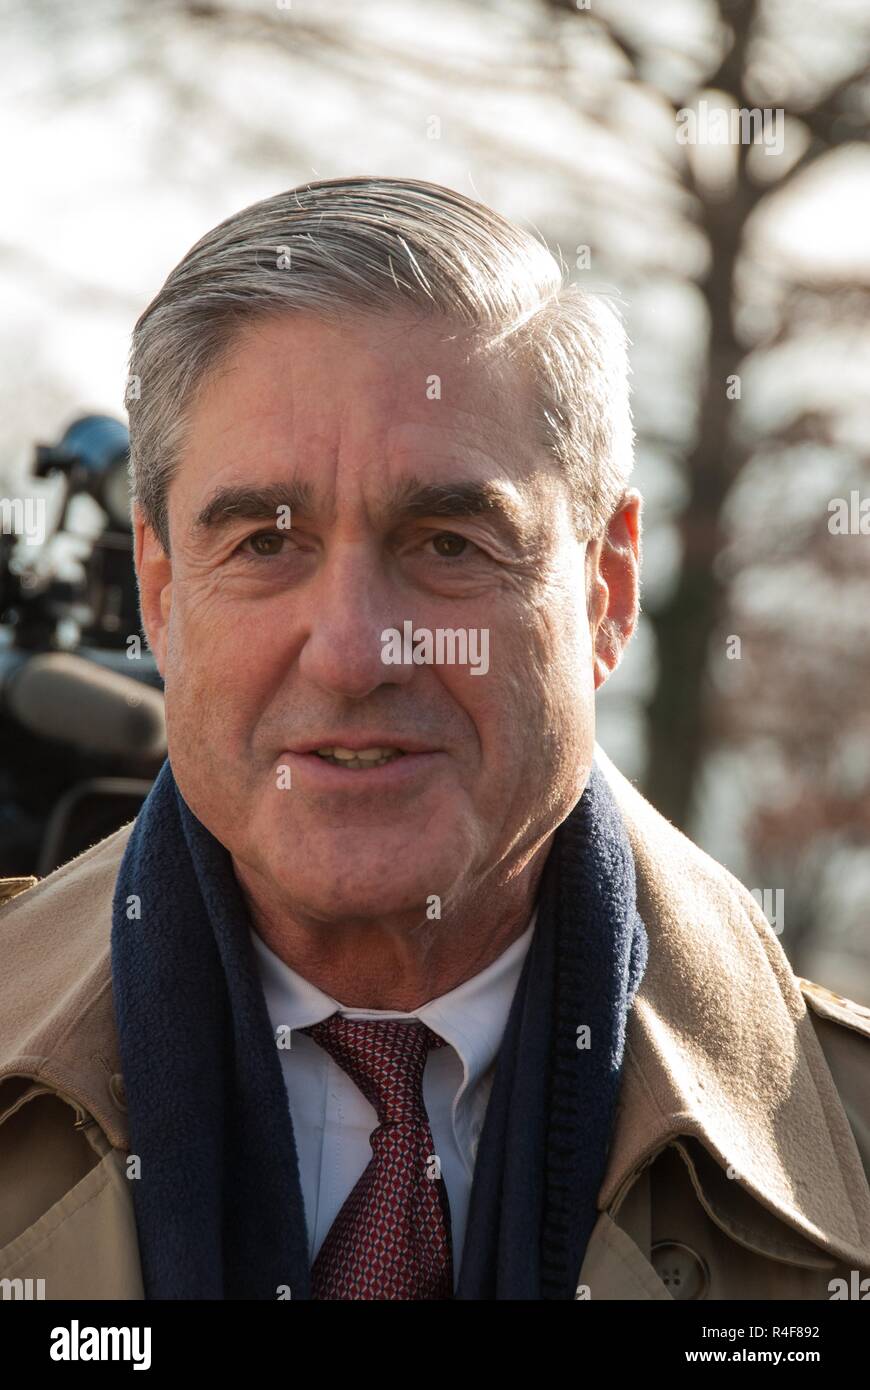 Spezielle Verfolger in der Russland Untersuchung und ehemaliger FBI-Direktor Robert Mueller. Stockfoto